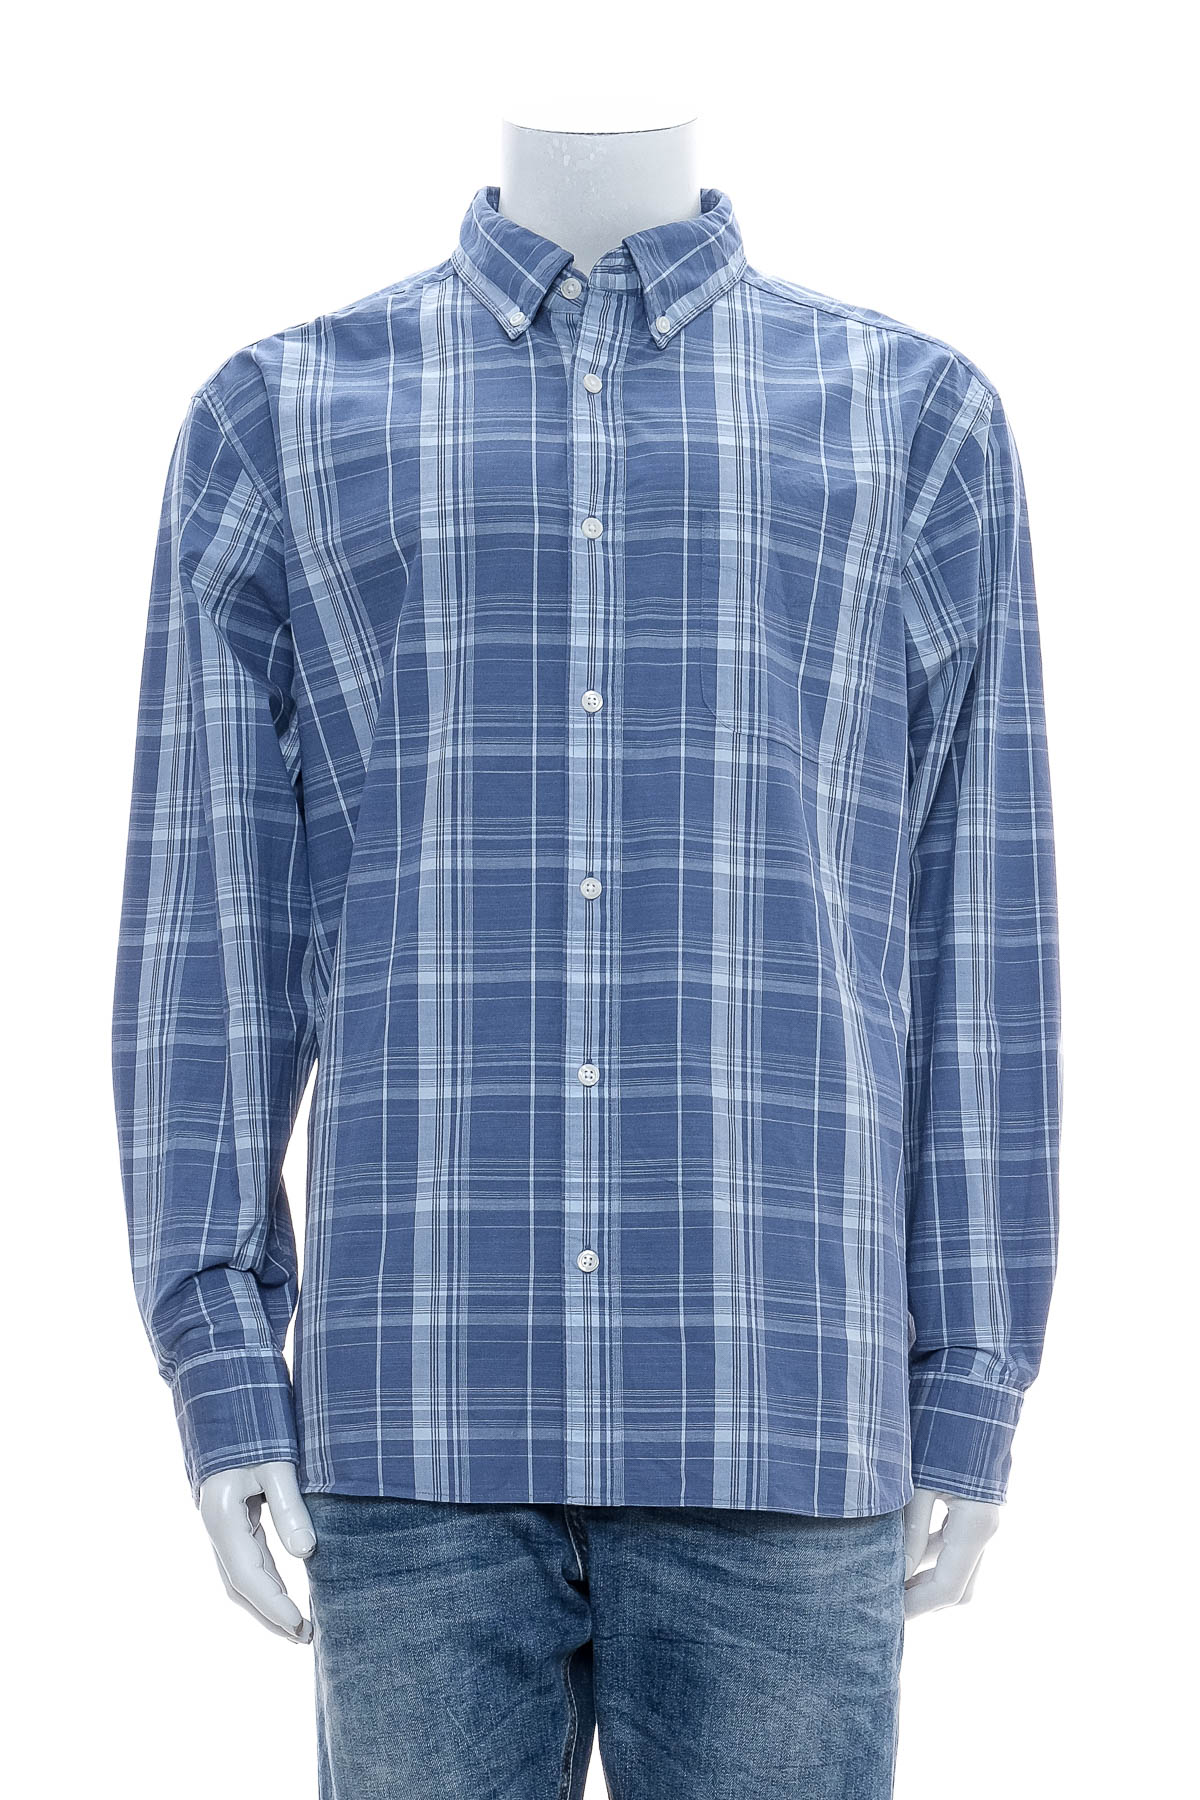 Men's shirt - CHARLES TYRWHITT - 0